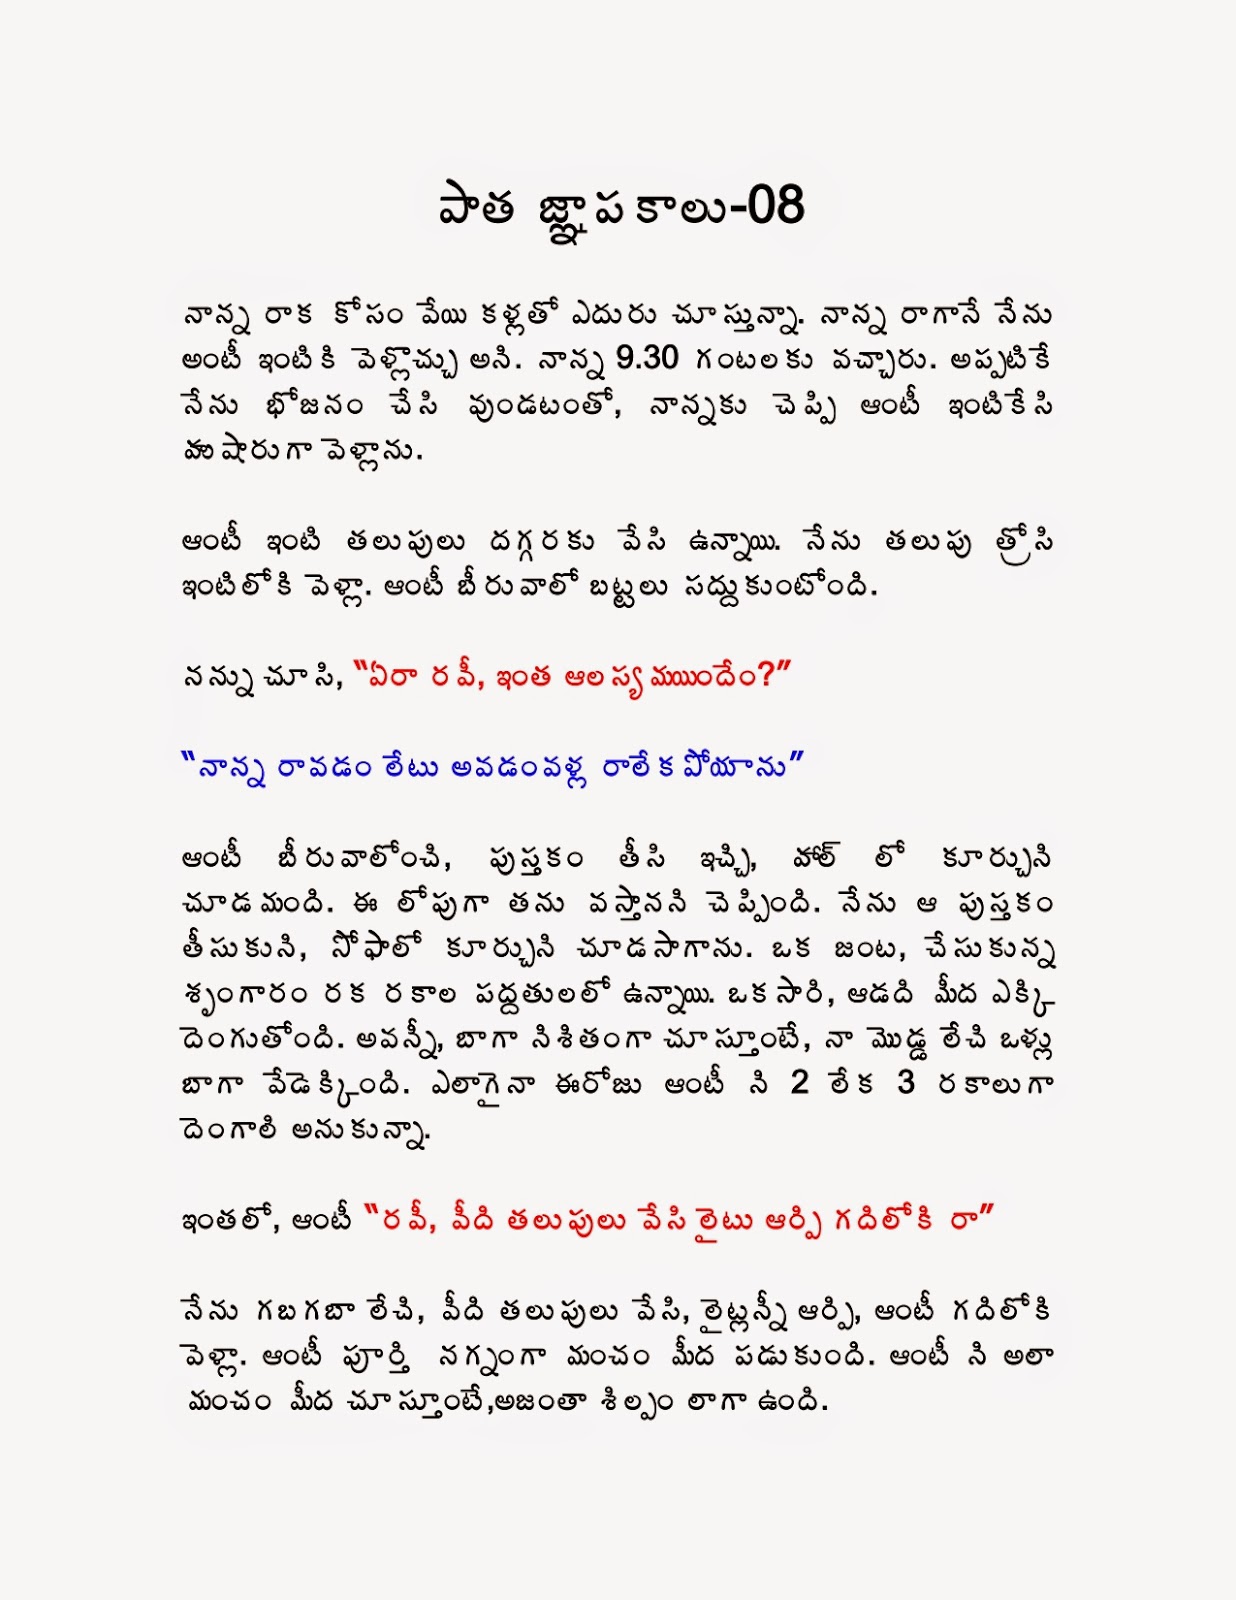 Telugu Sex Stories